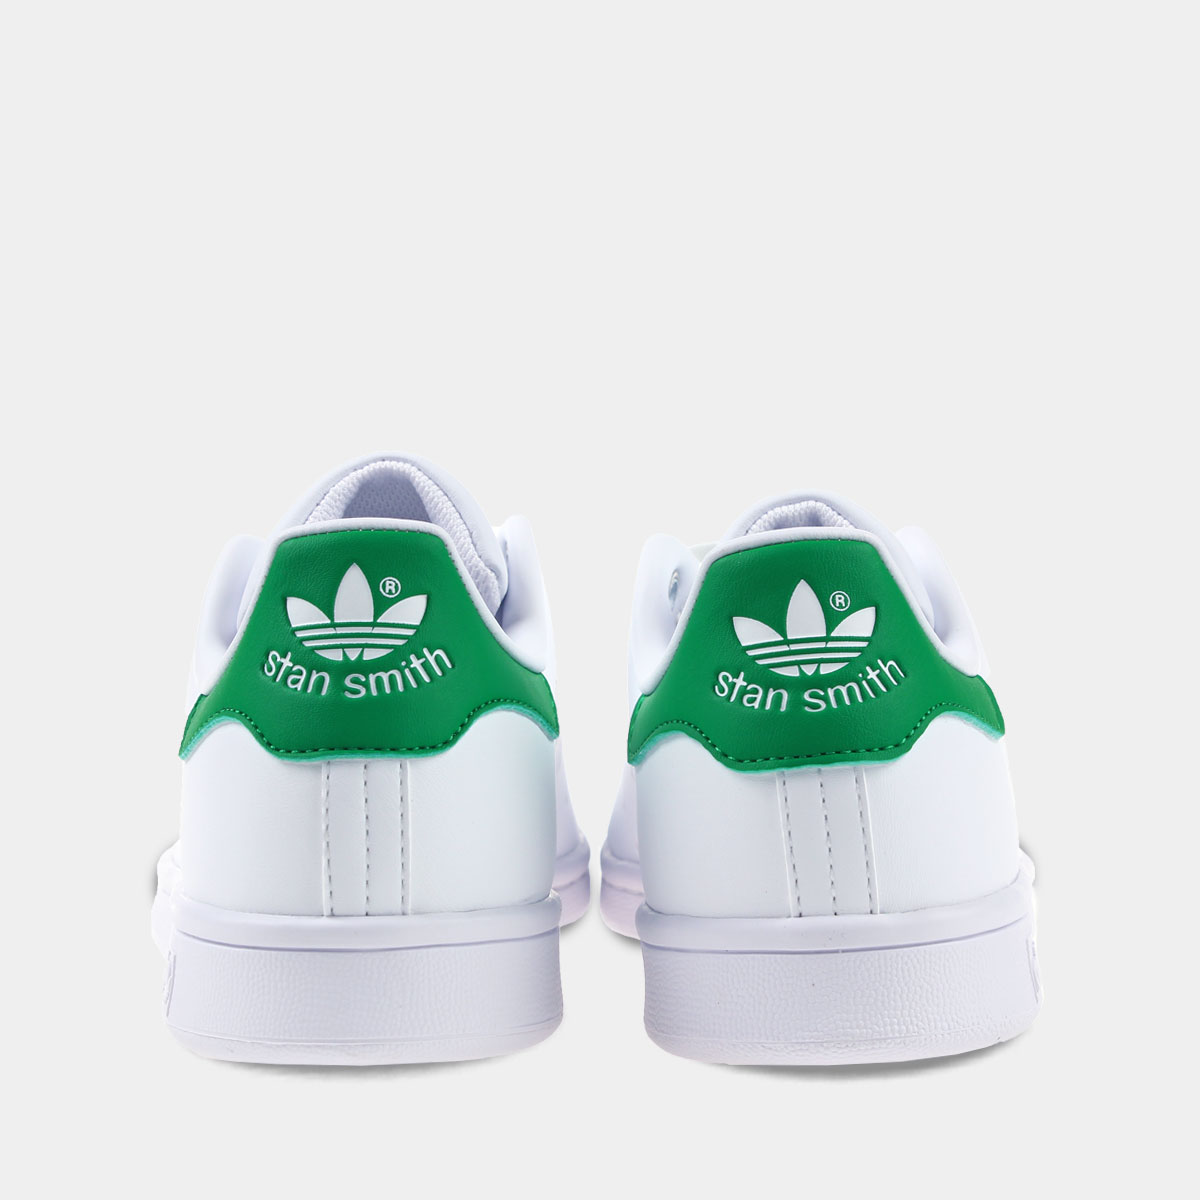 Adidas Stan Smith Wit/Groen Primegreen